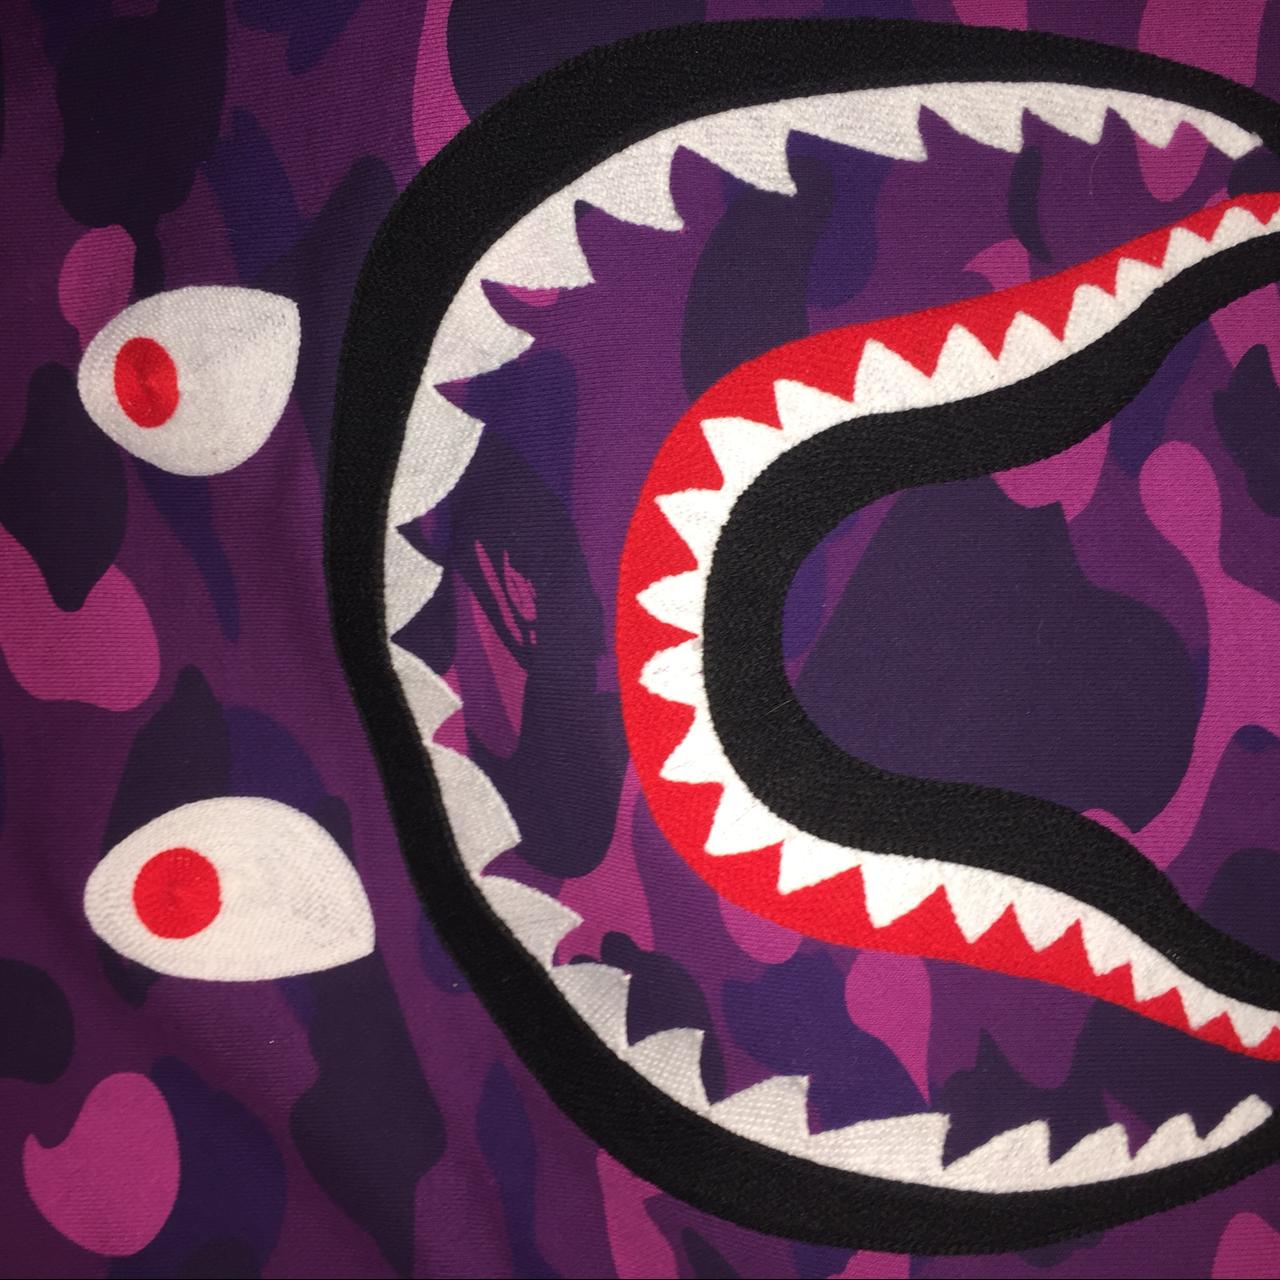 Bape Shark purple camo New New New Supreme bape - Depop